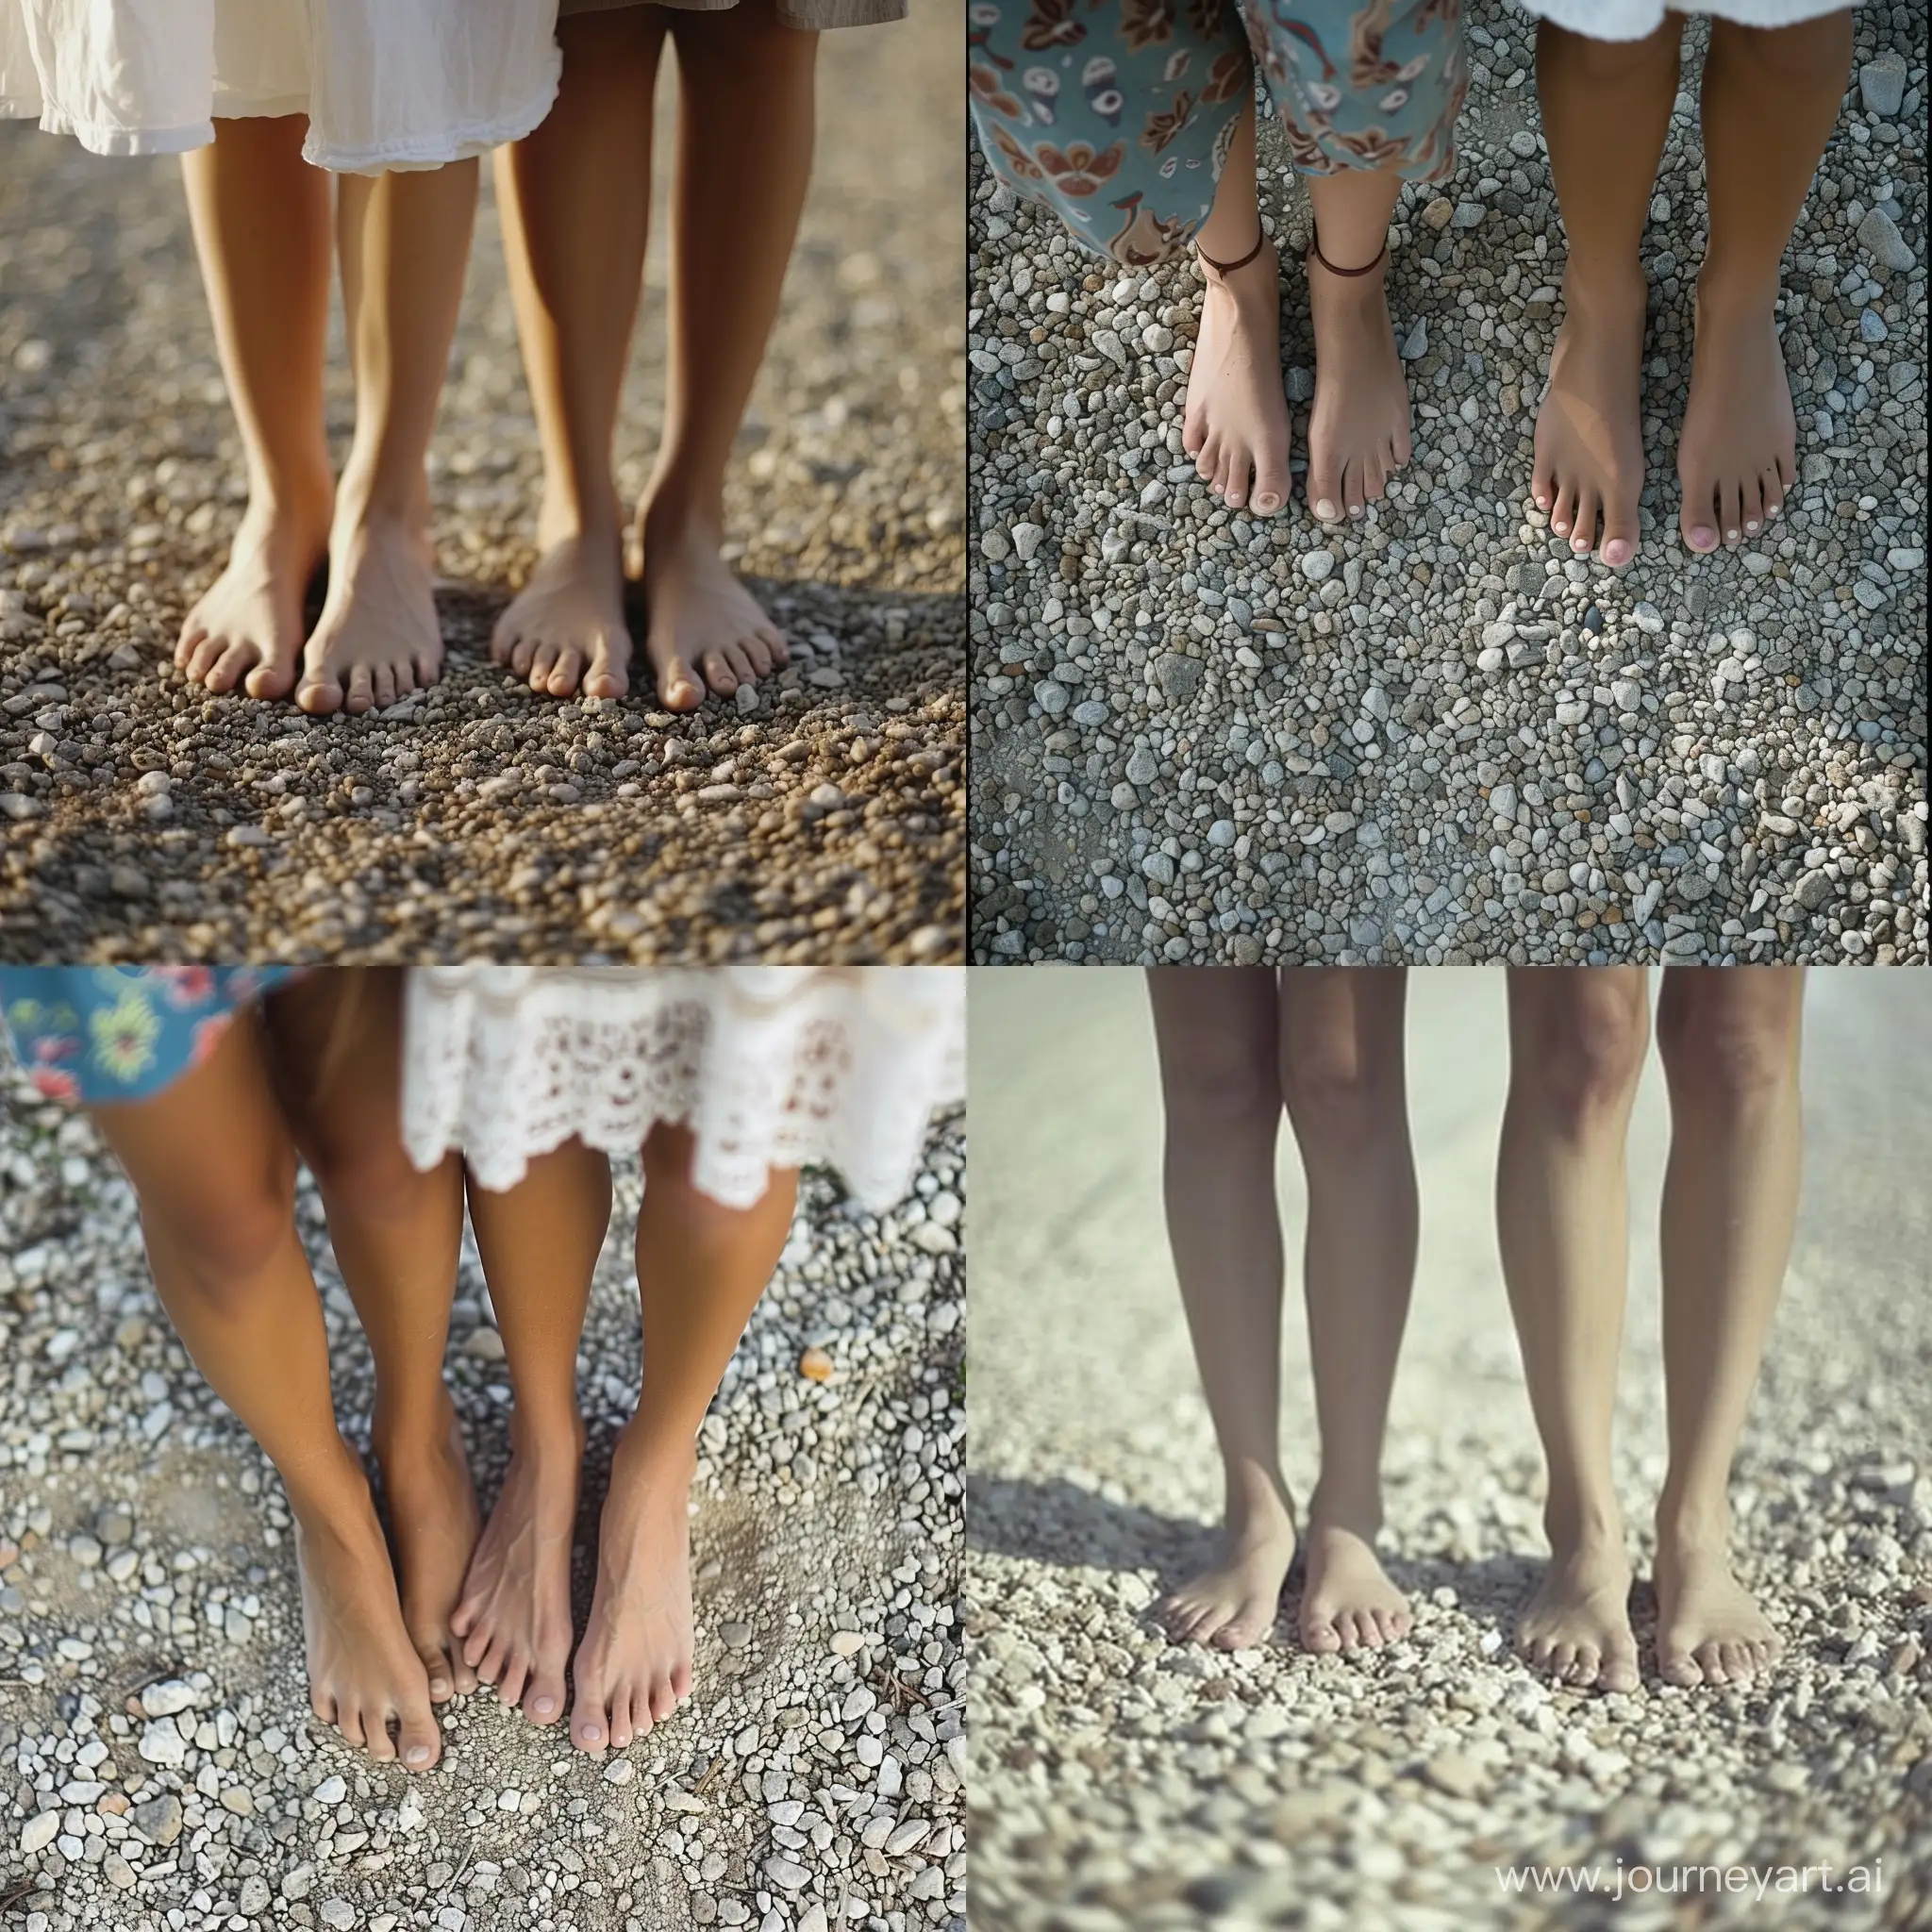 Barefoot women on gravel